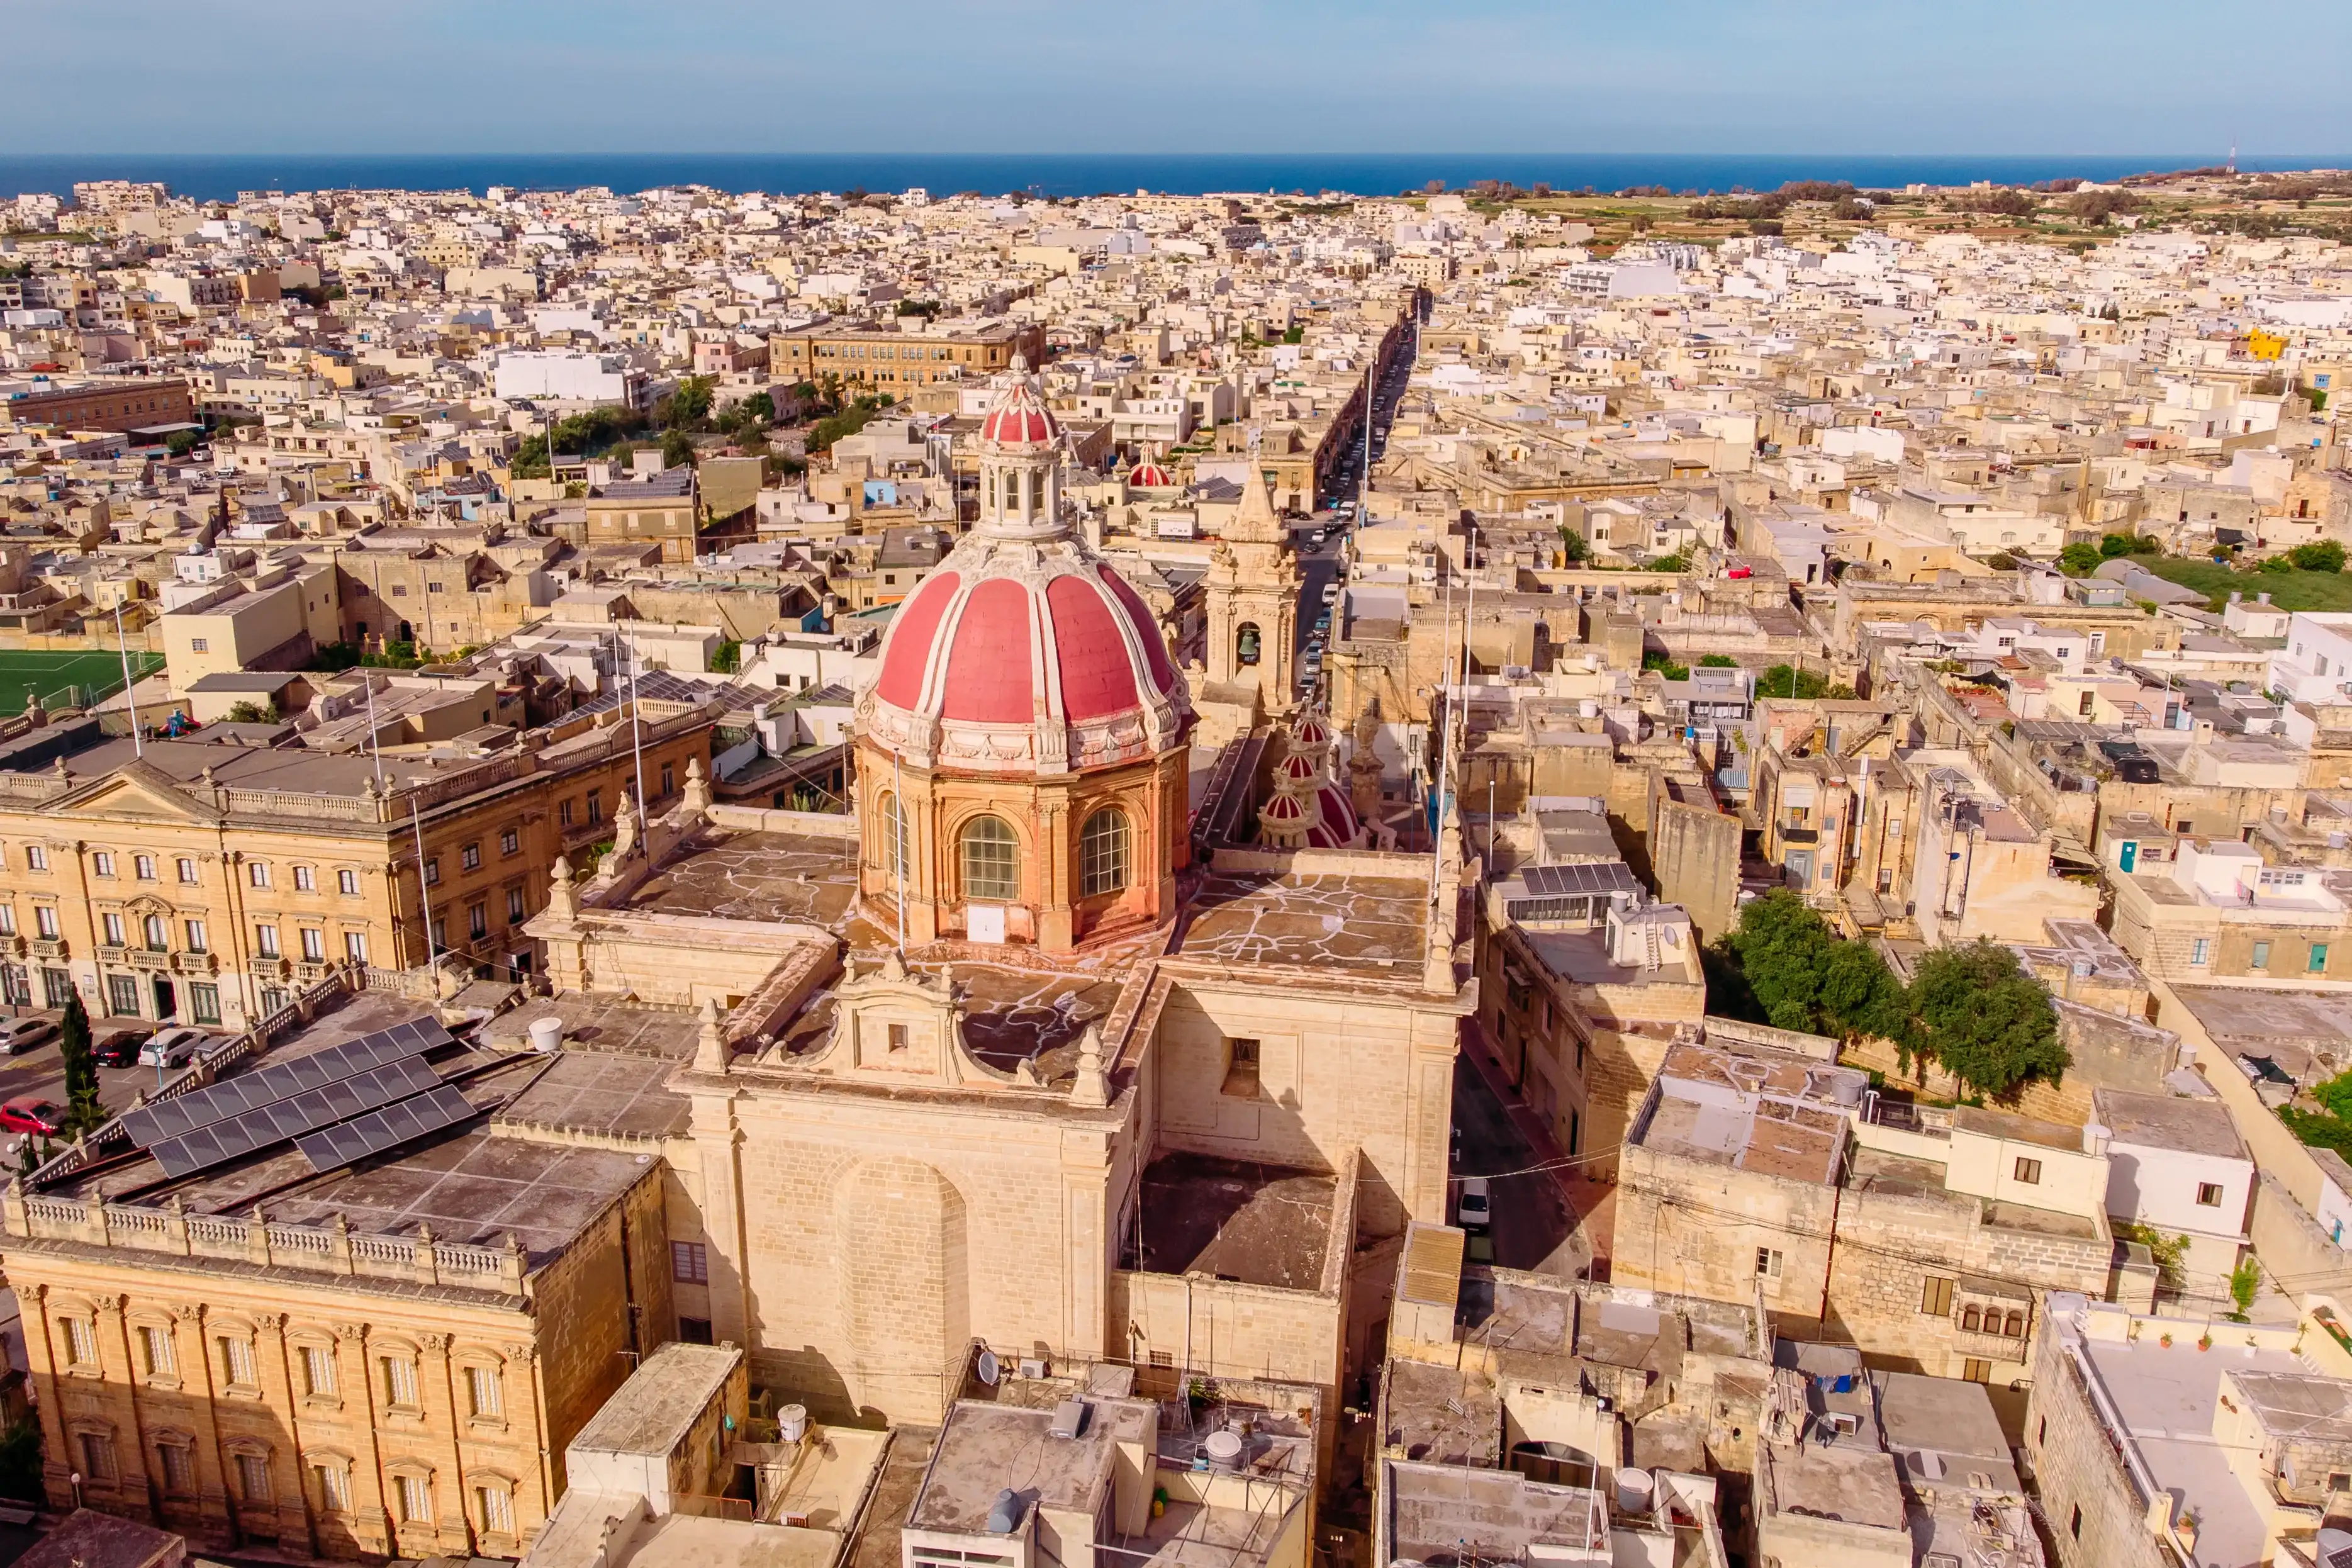 Zabbar church parish dome Malta, aerial top view.